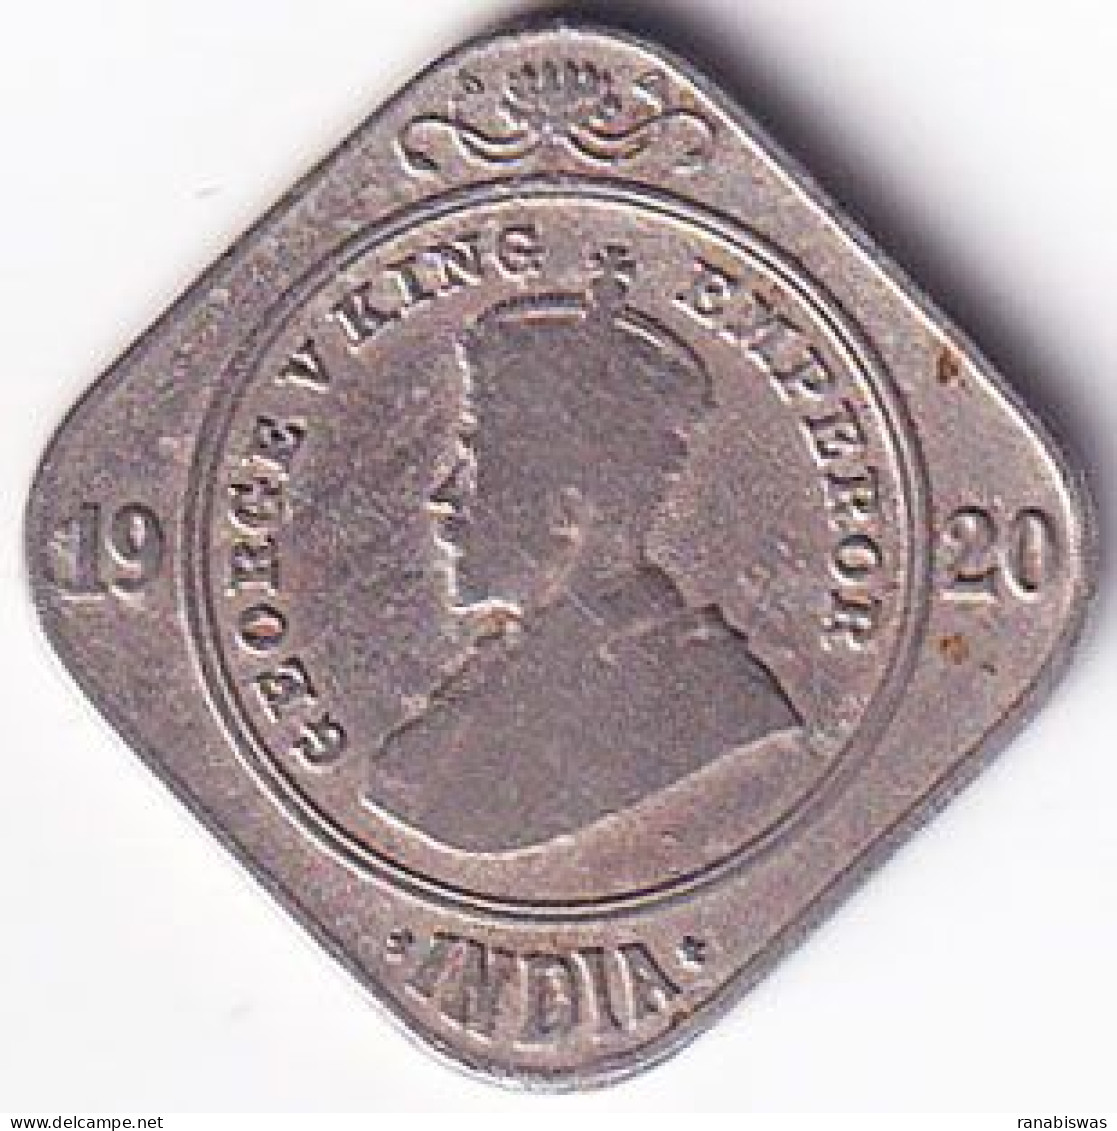 INDIA COIN LOT 174, 2 ANNAS 1920, CALCUTTA MINT, XF, RARE - India